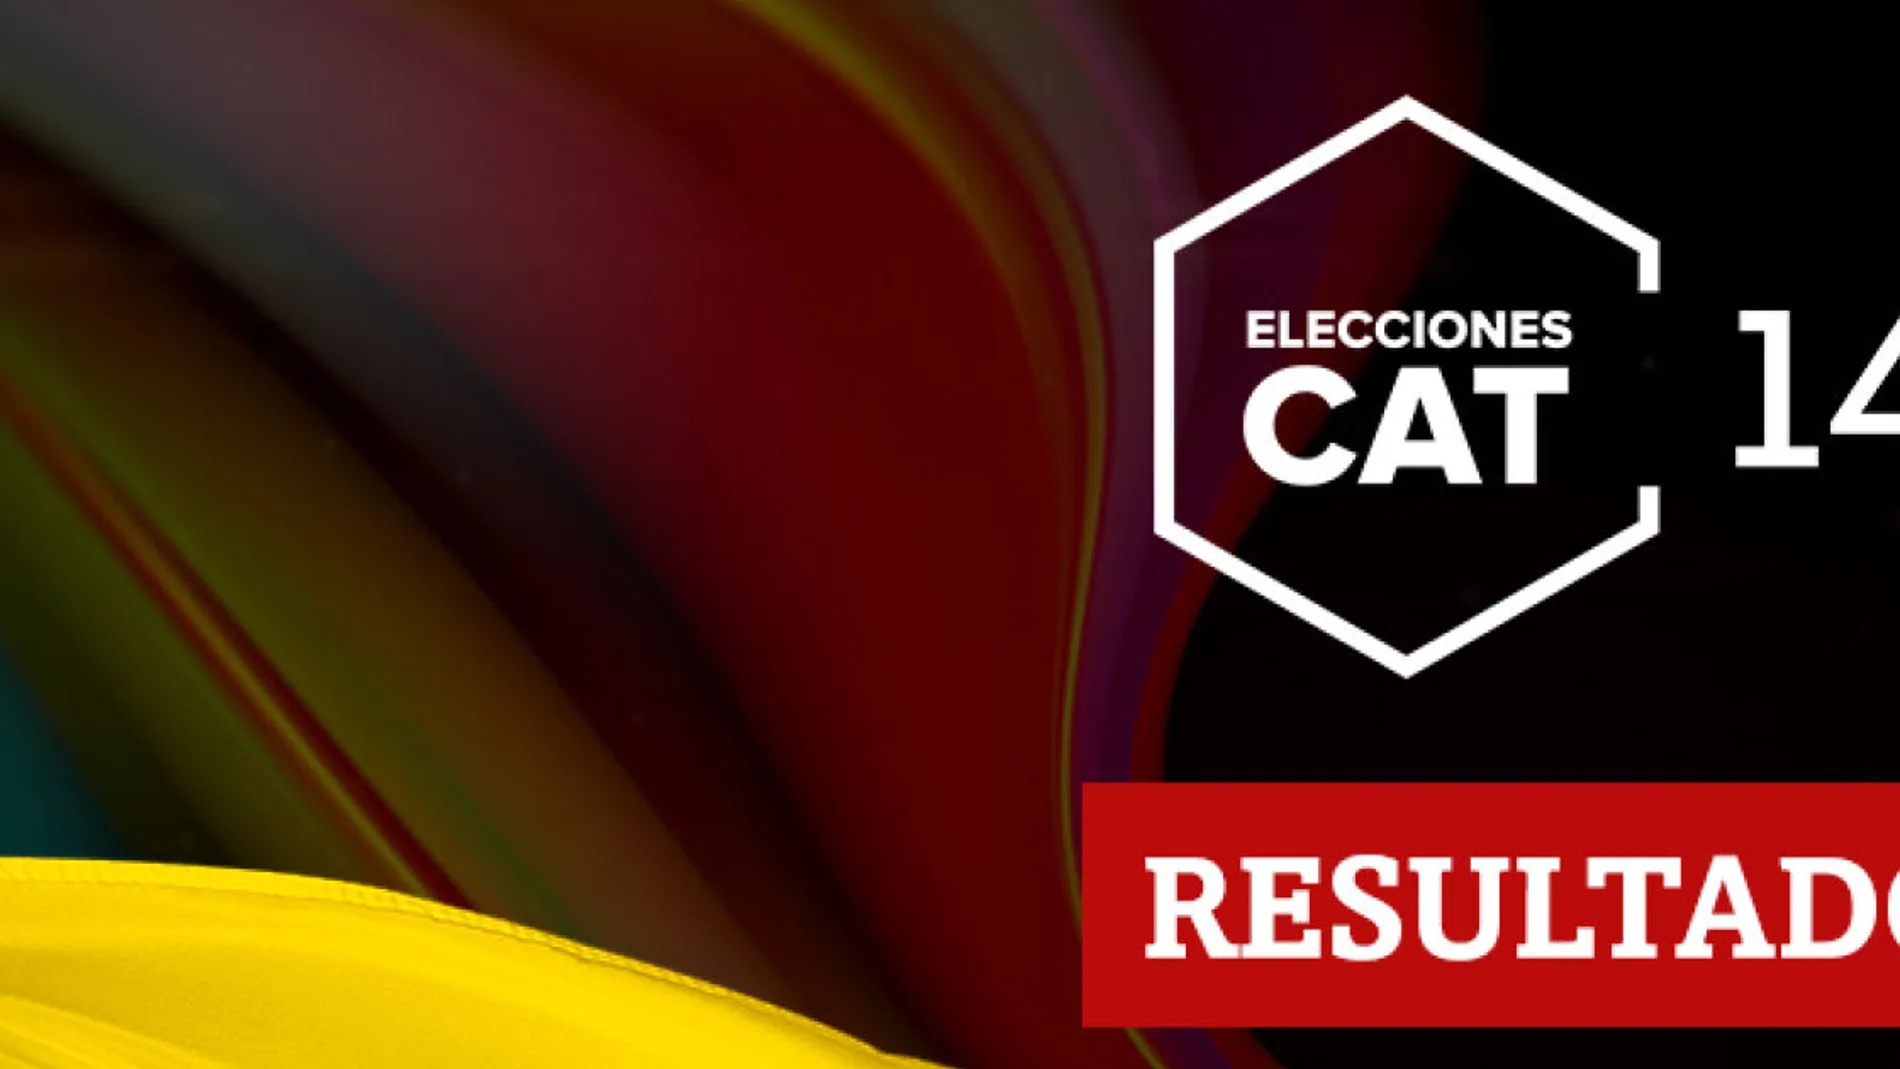 Resultados en Vandellòs i l'Hospitalet de l'Infant de las elecciones catalanas del 14F 2021